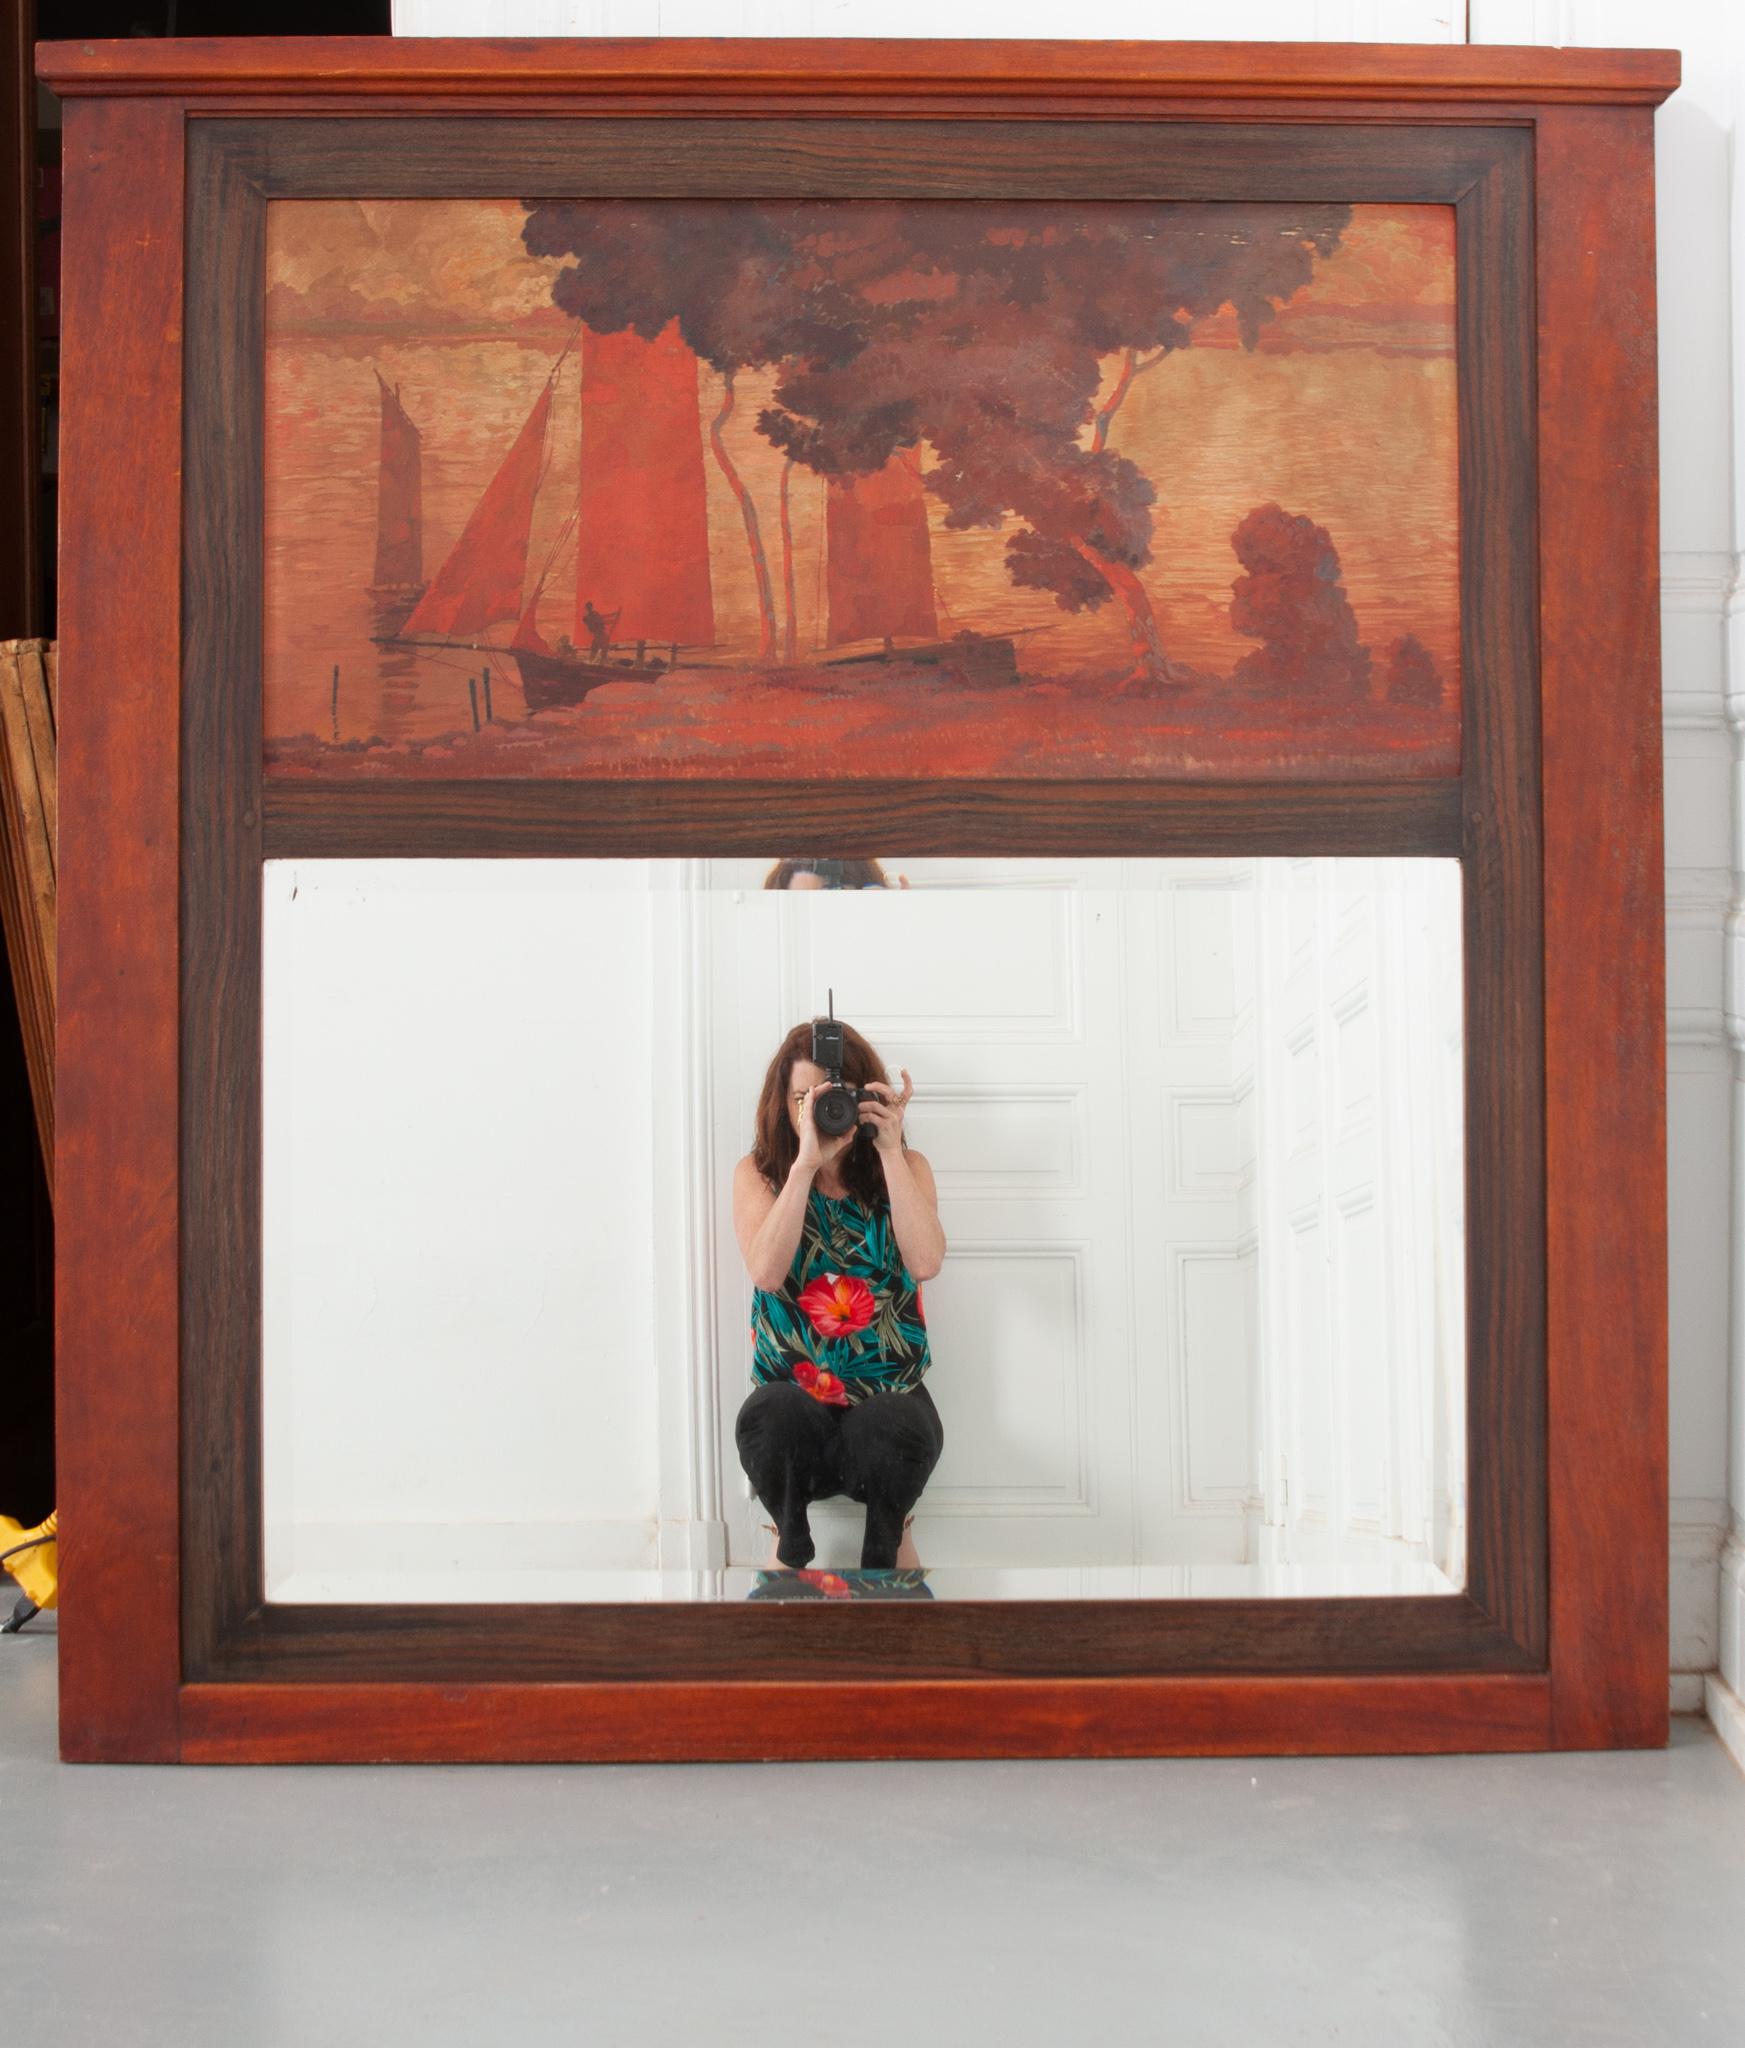 Un magnifique trumeau français du 19ème siècle. Encadrée en acajou et en bois de rose, une belle peinture à l'huile sur panneau représentant une scène côtière chaleureuse est fixée au-dessus du miroir. Le miroir biseauté est peut-être plus récent